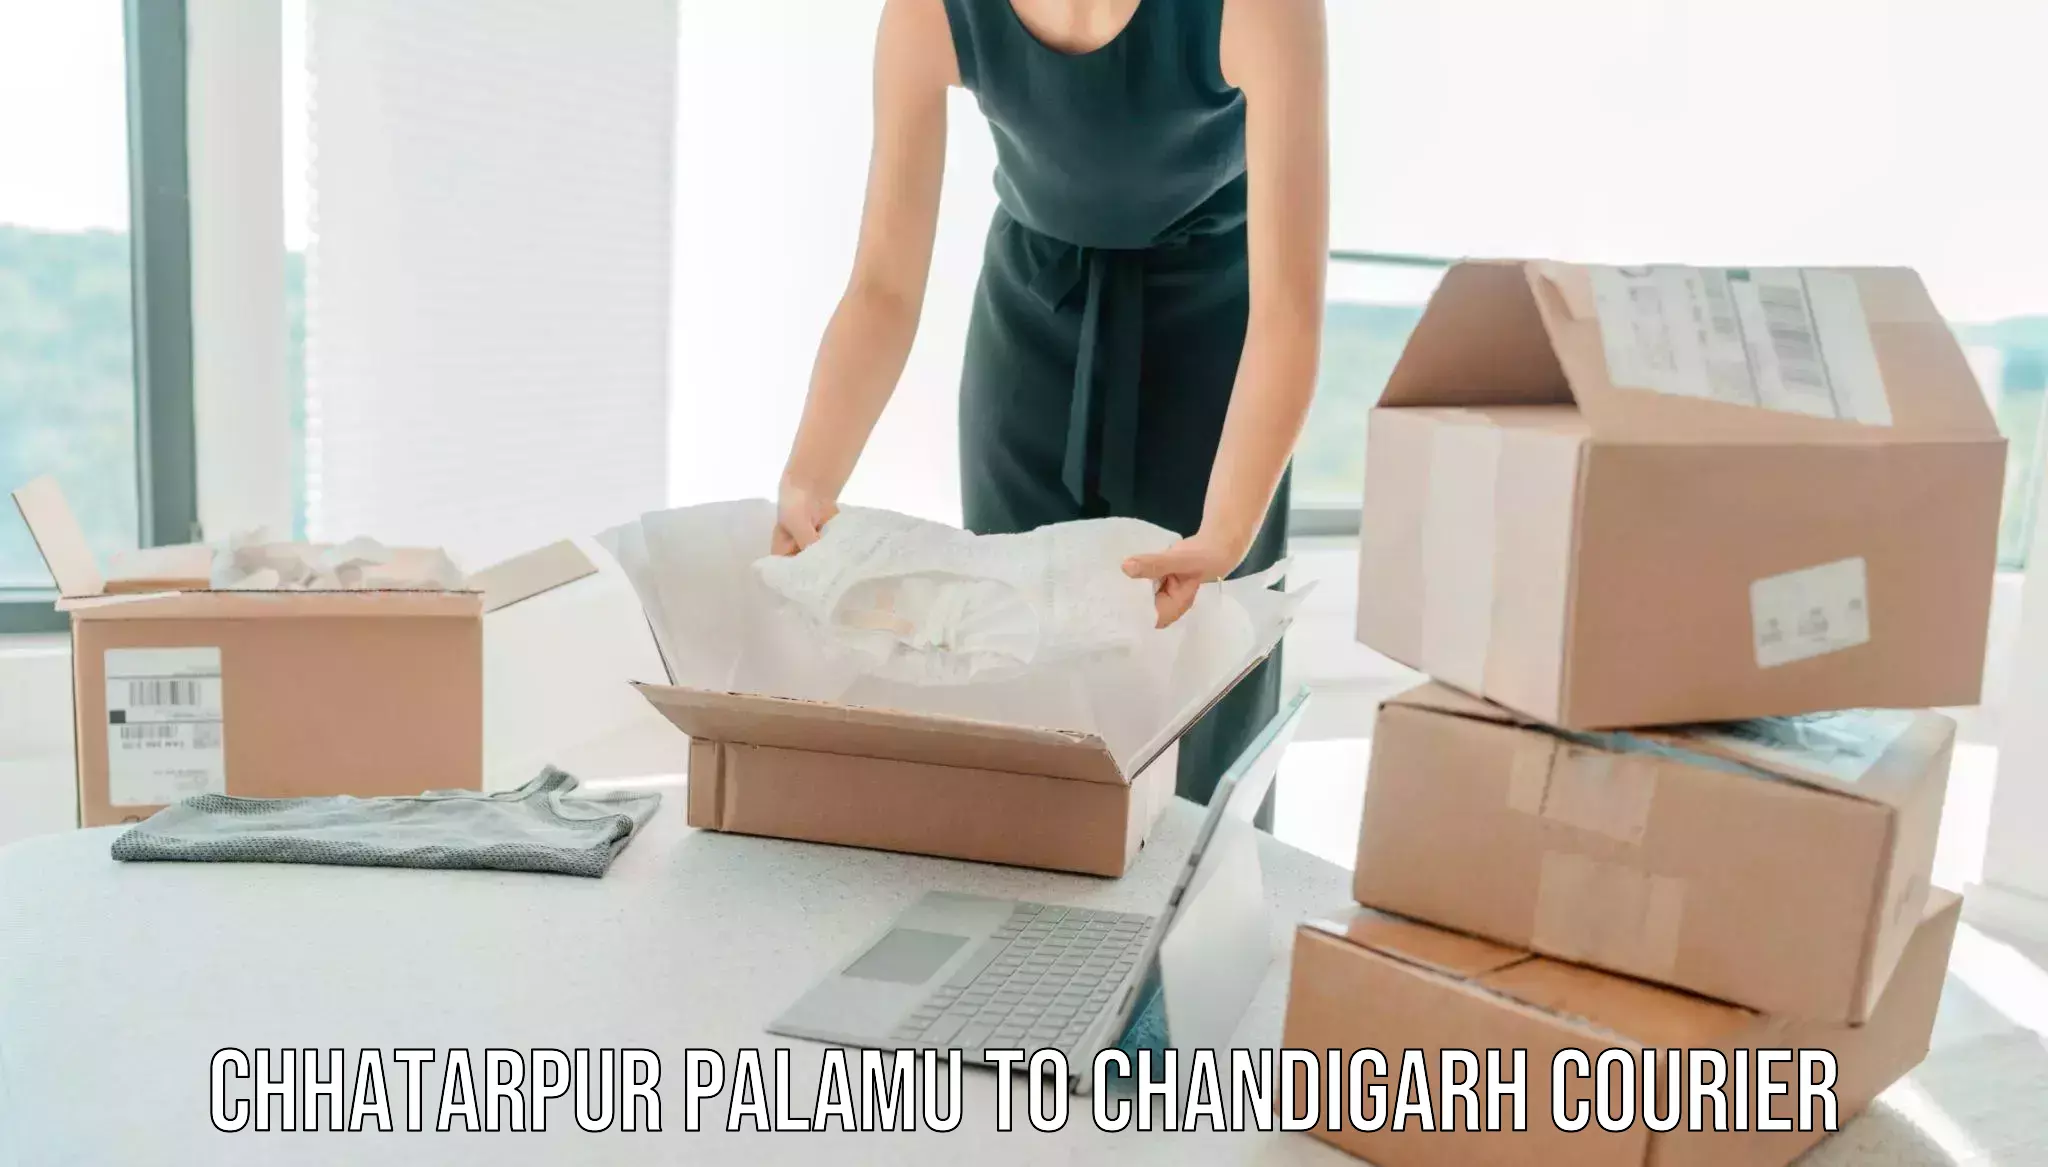 Professional furniture moving Chhatarpur Palamu to Panjab University Chandigarh